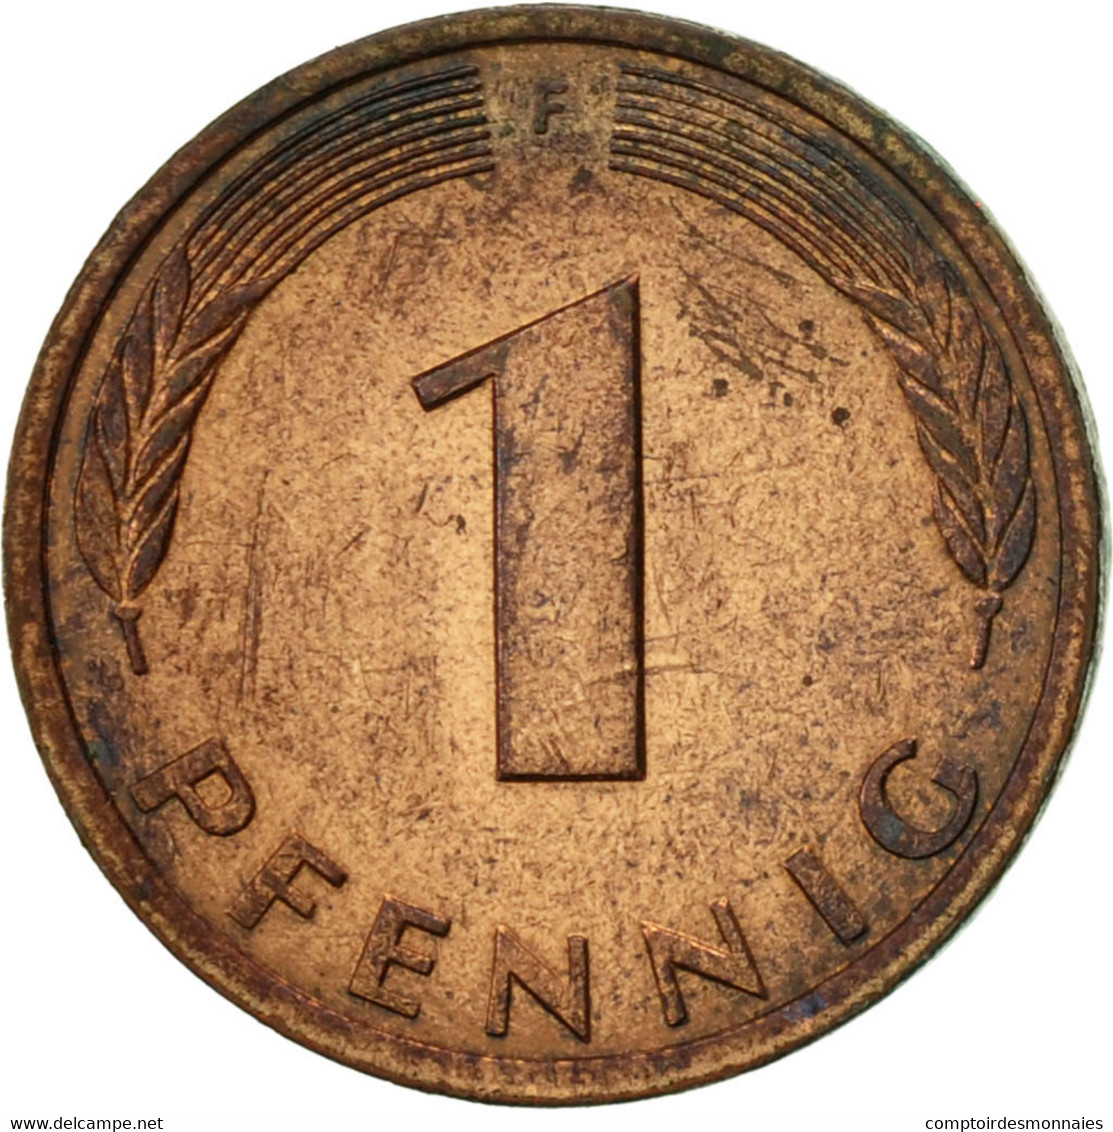 Monnaie, République Fédérale Allemande, Pfennig, 1980, Stuttgart, TTB, Copper - 1 Pfennig